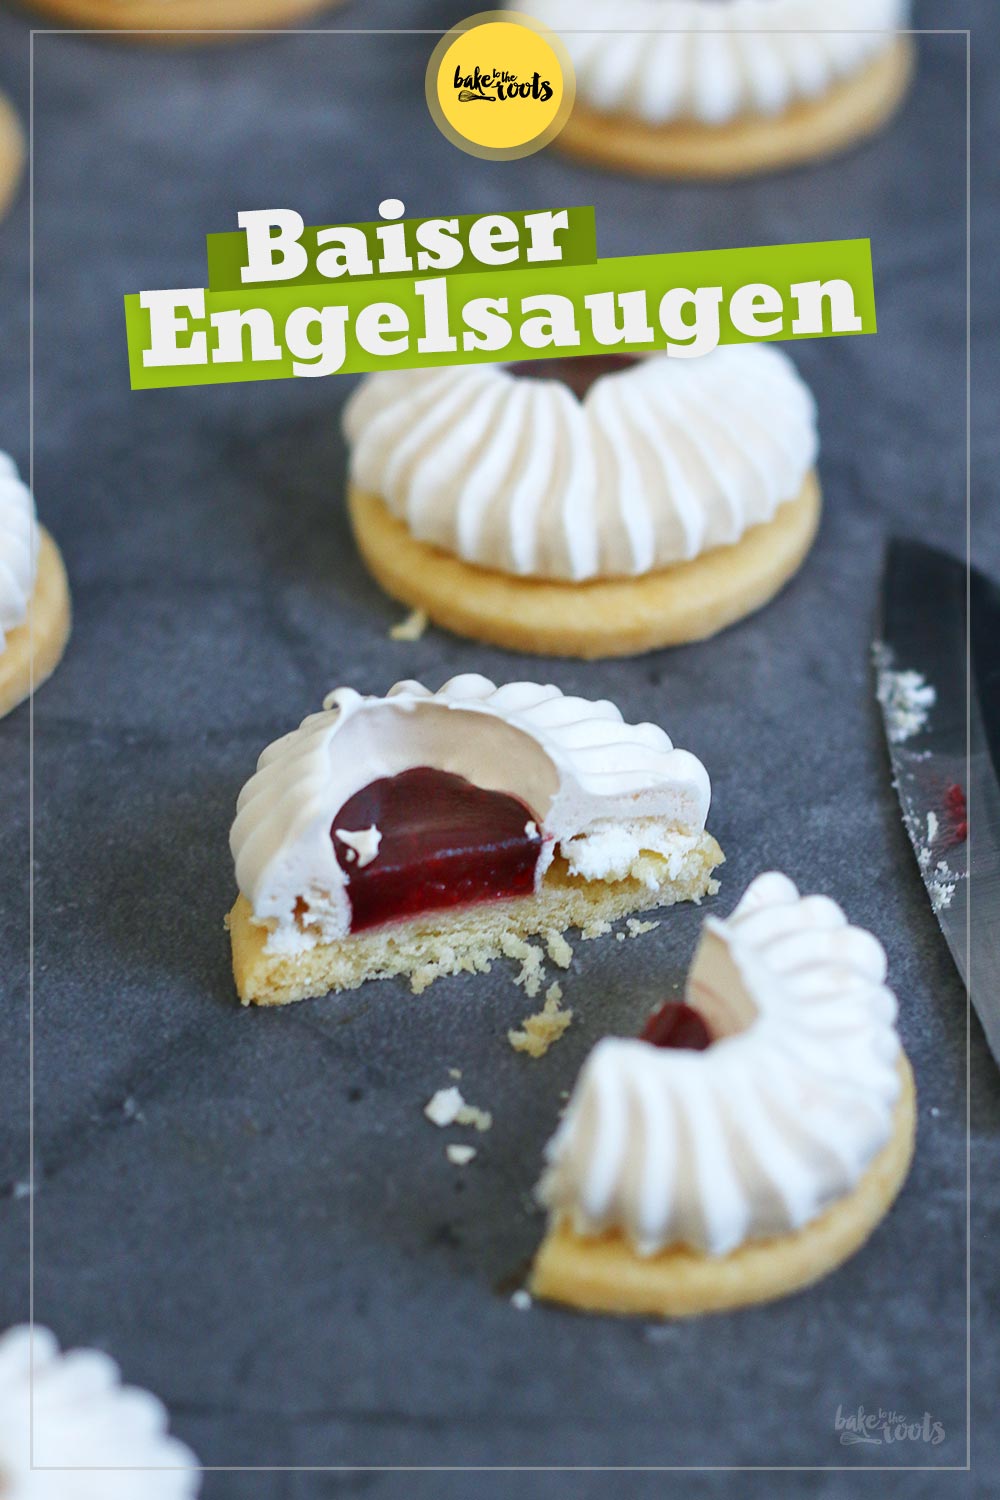 Baiser Engelsaugen | Bake to the roots